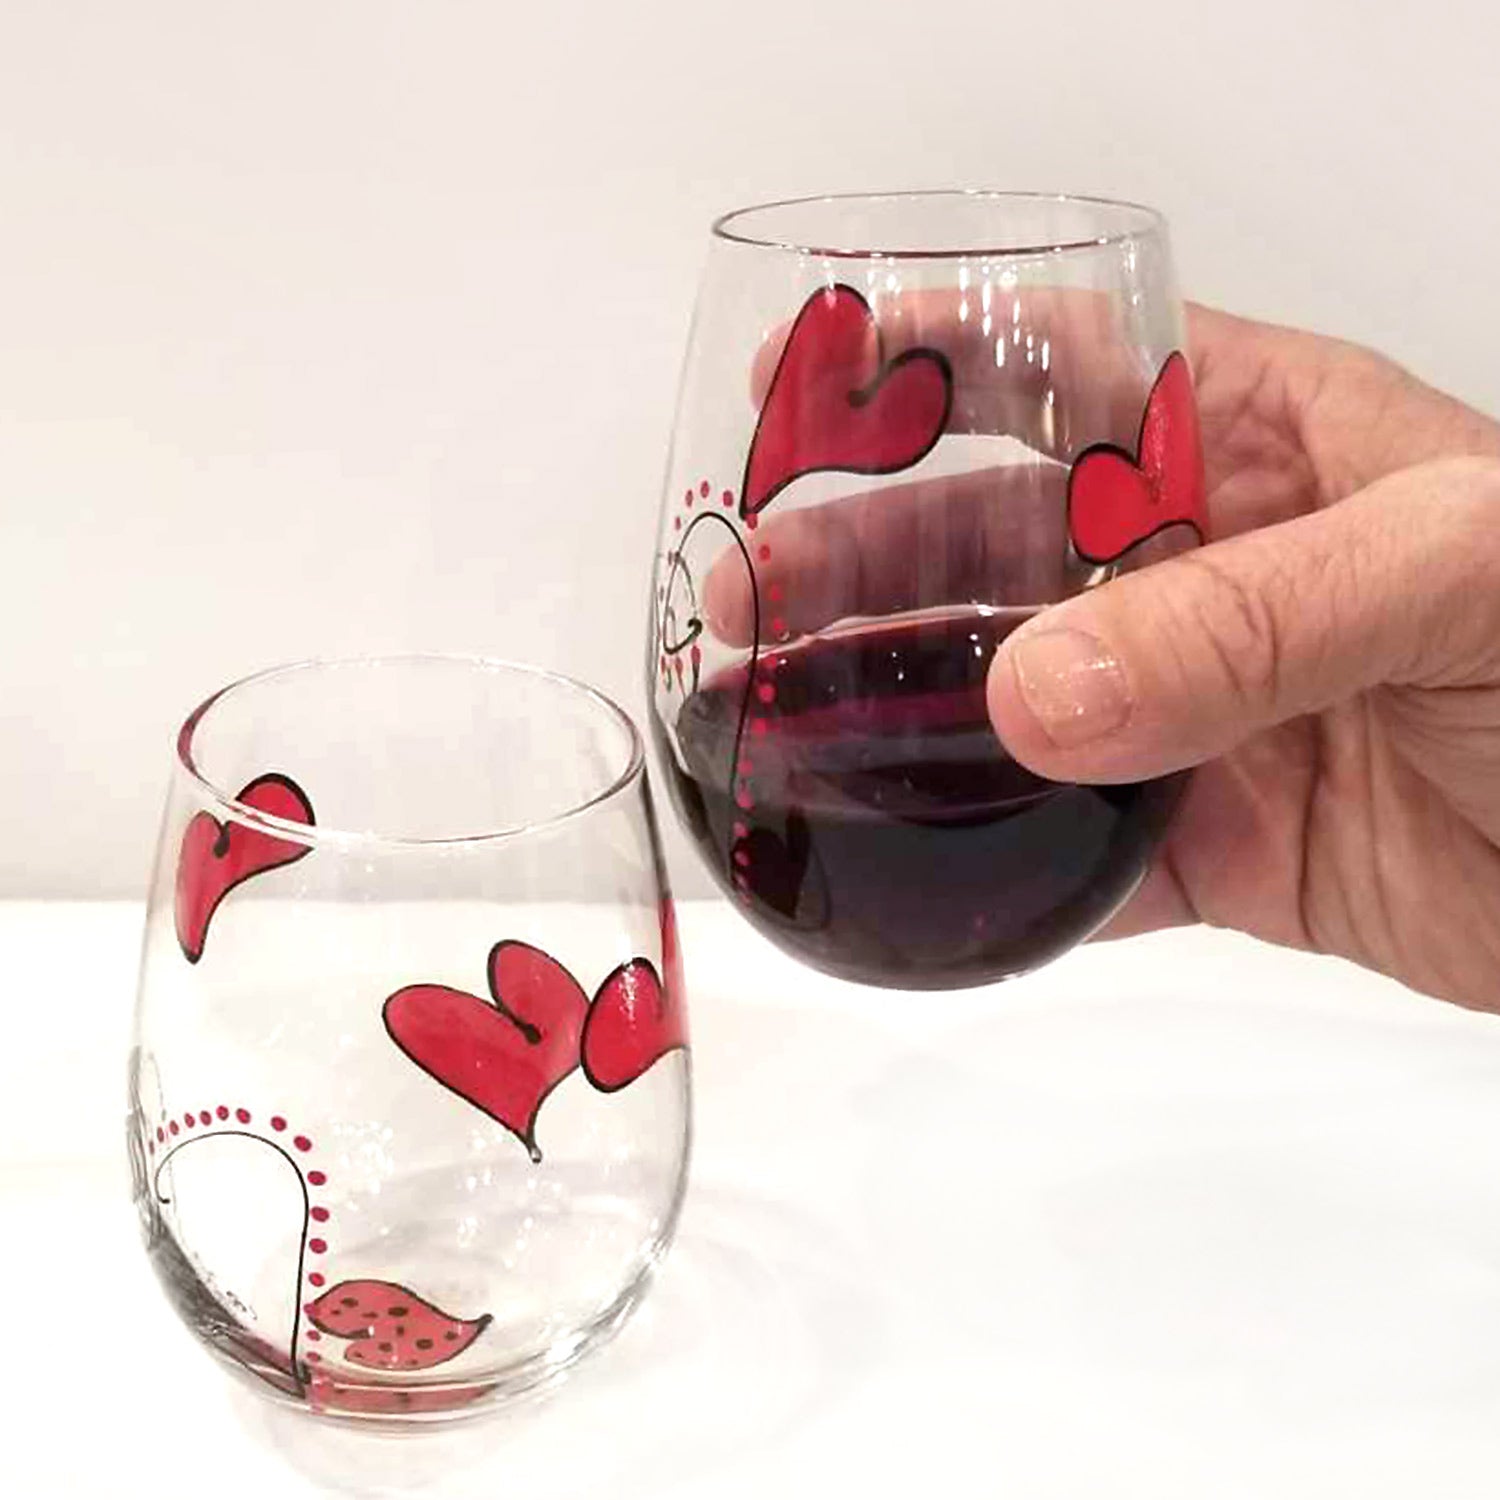 Let It Flow Wine Glass, Frozen Inspired Wine Glass, Dis Inspired Wine Glass,  Dis Gift, Let It Go Wine Glass, Elsa Wine Glass 